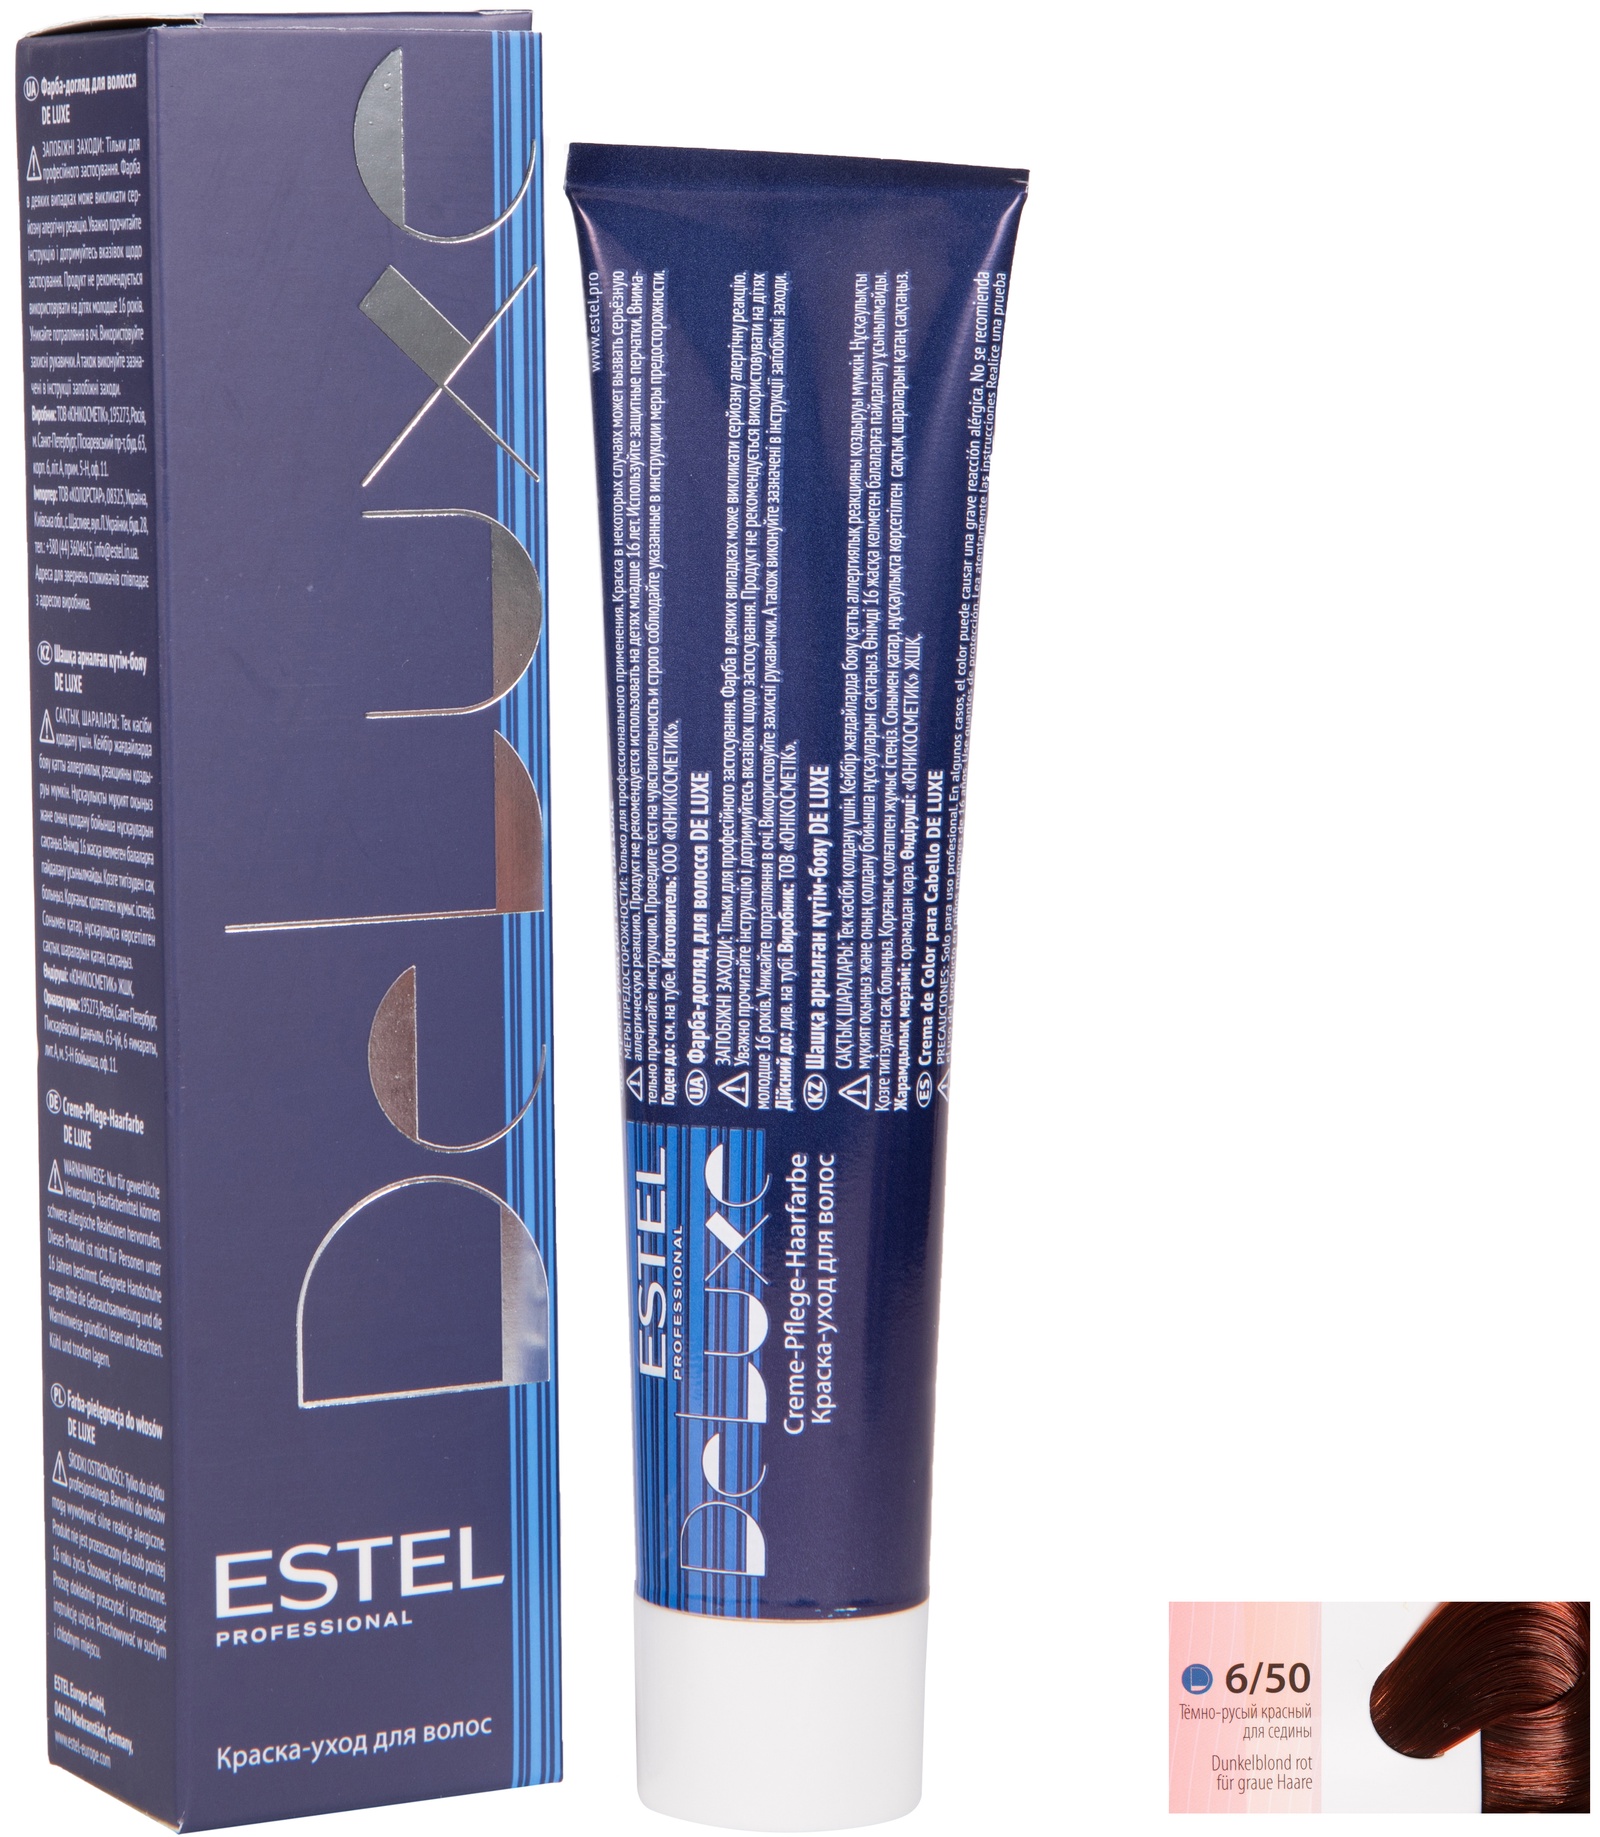 Краска для волос ESTEL PROFESSIONAL 6/50 DE LUXE краска-уход для окрашивания волос, темно-русый красный для седины 60 мл